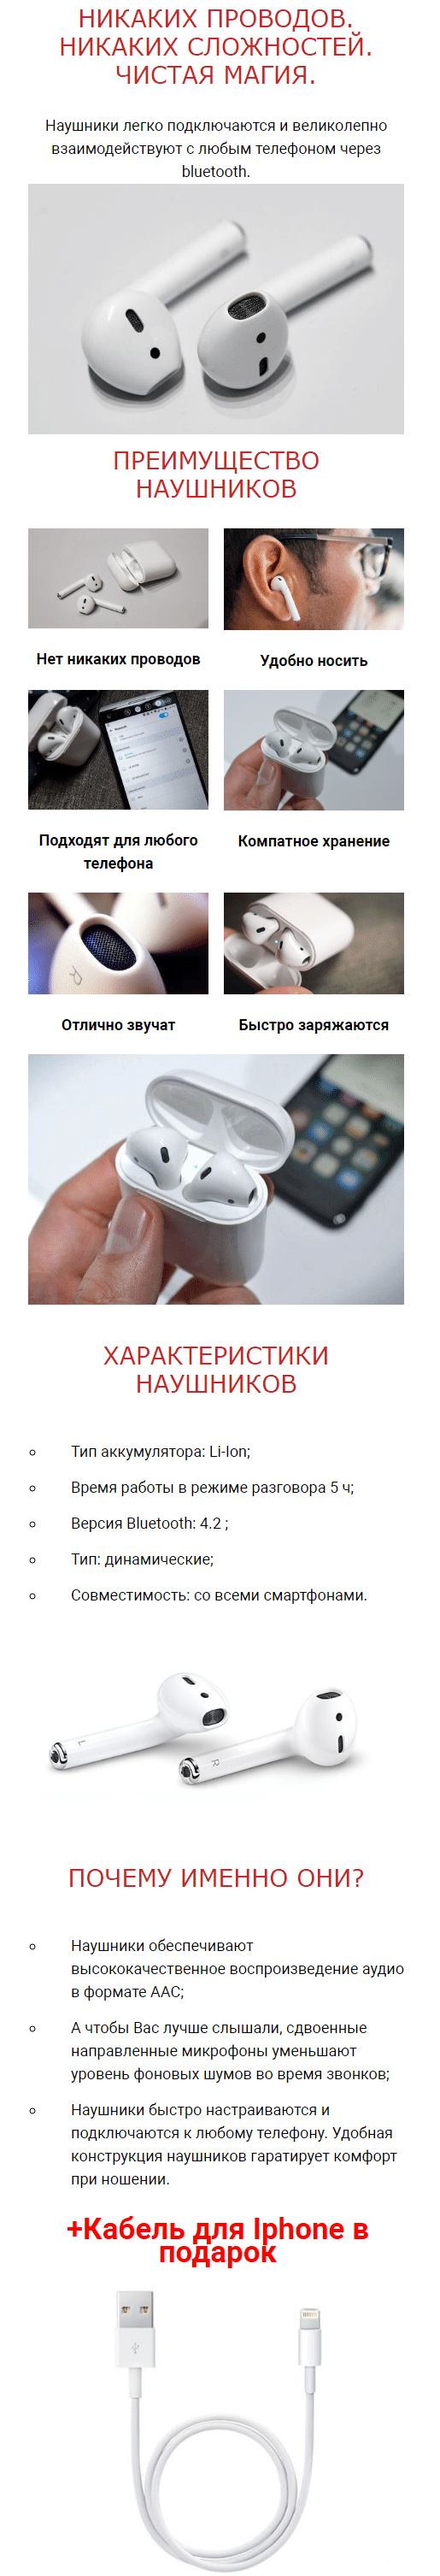 AirPods - беспроводные наушники + кабель для iPhone купить